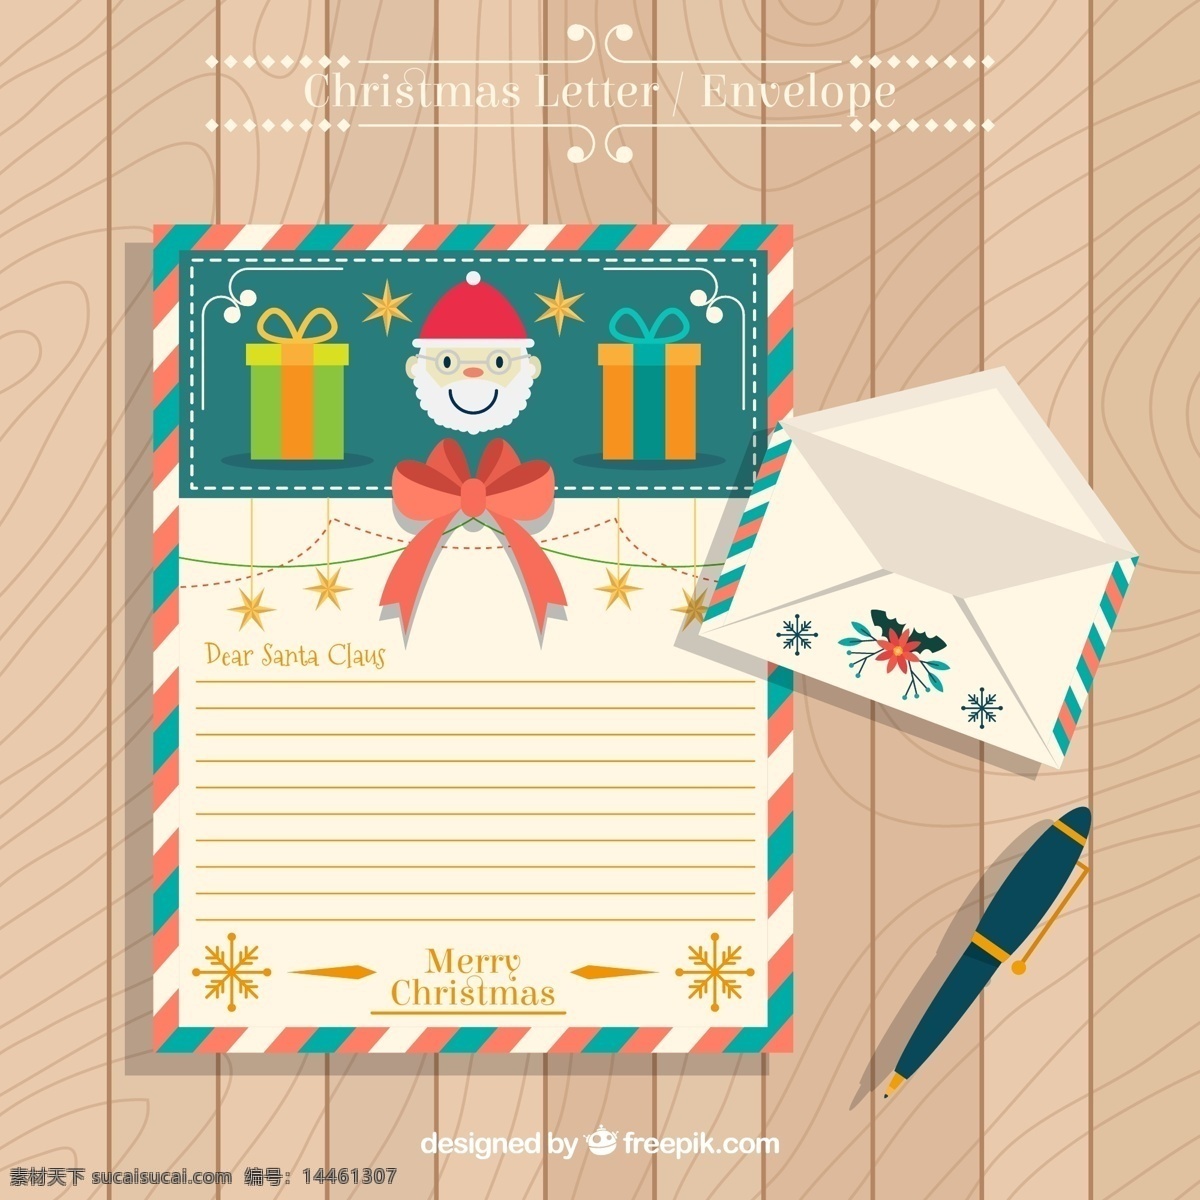 彩色 圣诞 信纸 信封 礼物 礼盒 雪花 蝴蝶结 生活用品 生活百科 办公用品